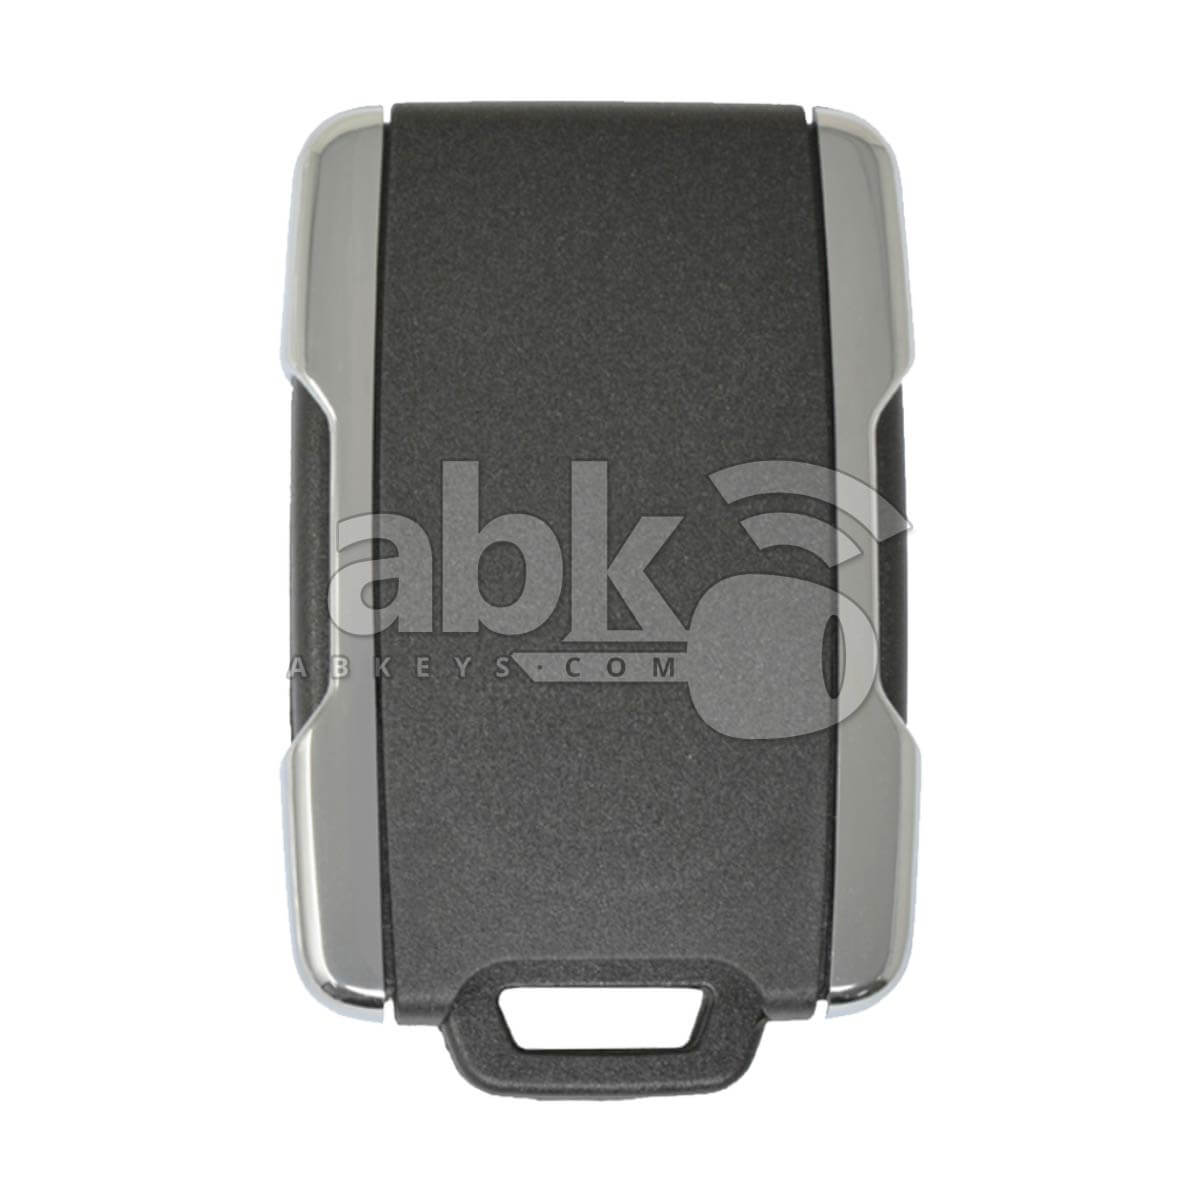 Chevrolet Gmc 2014+ Remote Control Cover 4Buttons Chrome - ABK-531 - ABKEYS.COM